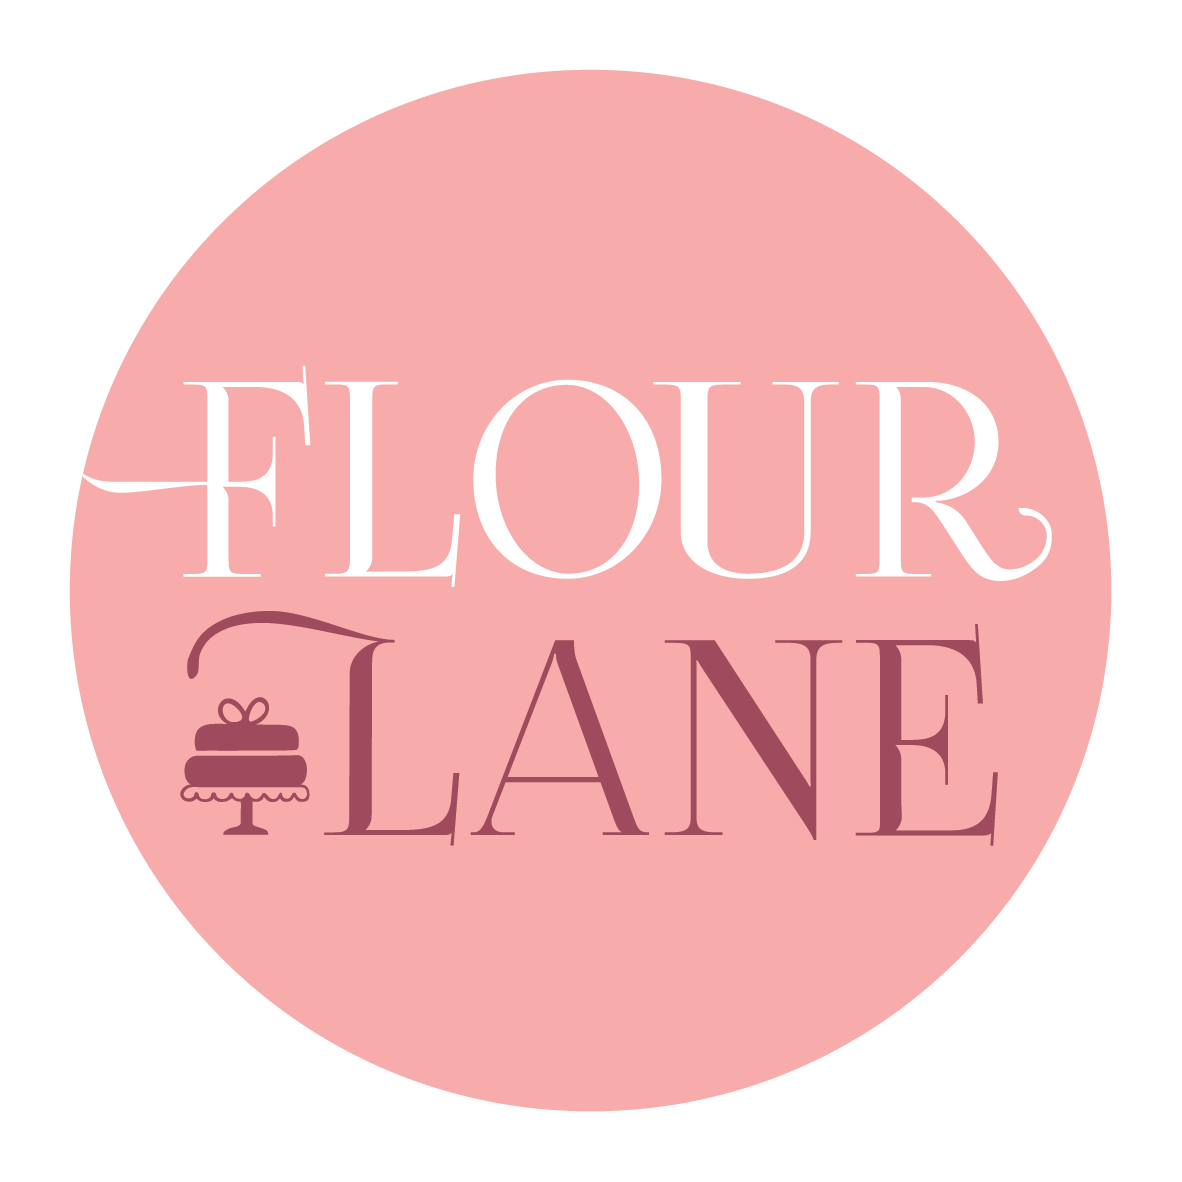 Flour Lane